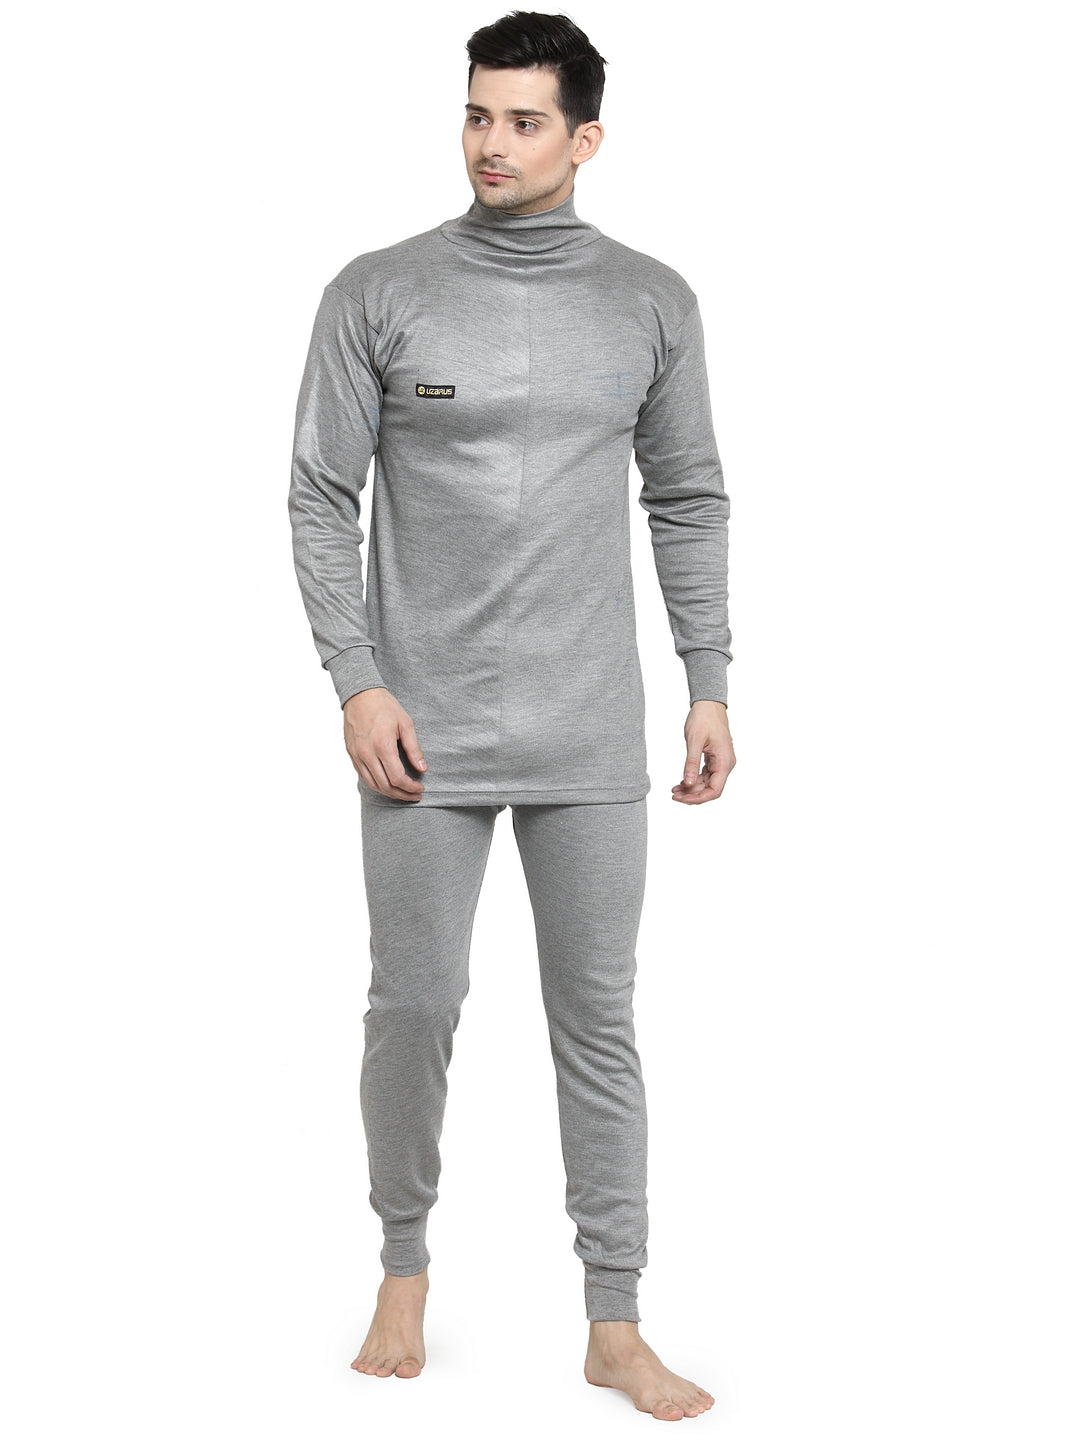 Buy Maroon Thermal Wear for Men by LUX COTT'S WOOL Online